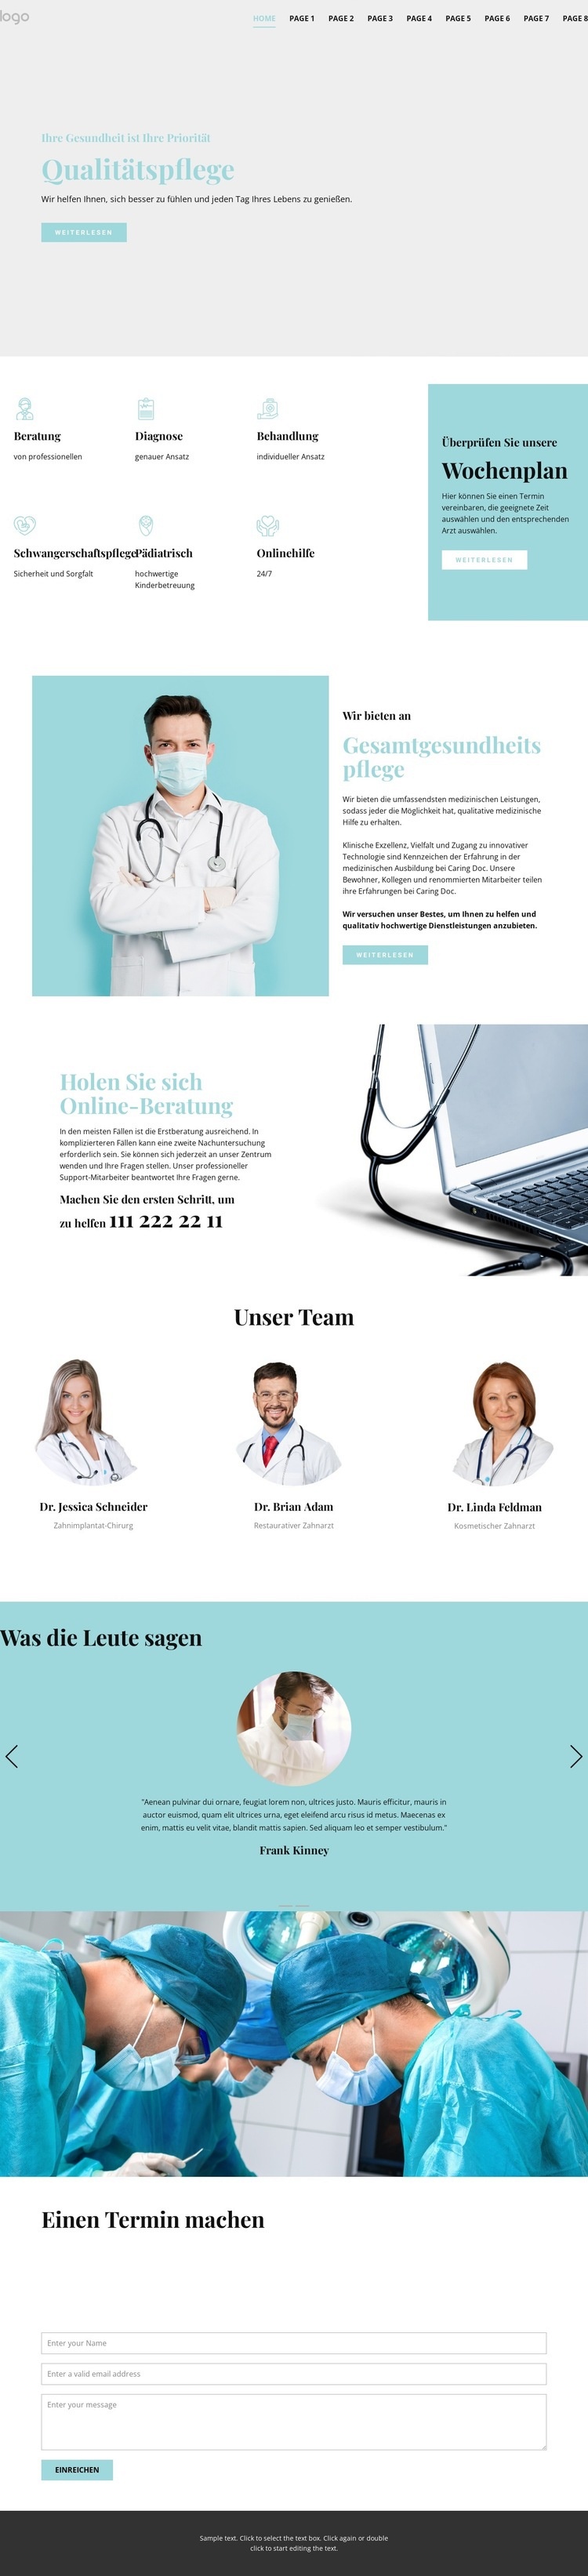 Qualitativ hochwertige medizinische Versorgung Website-Modell